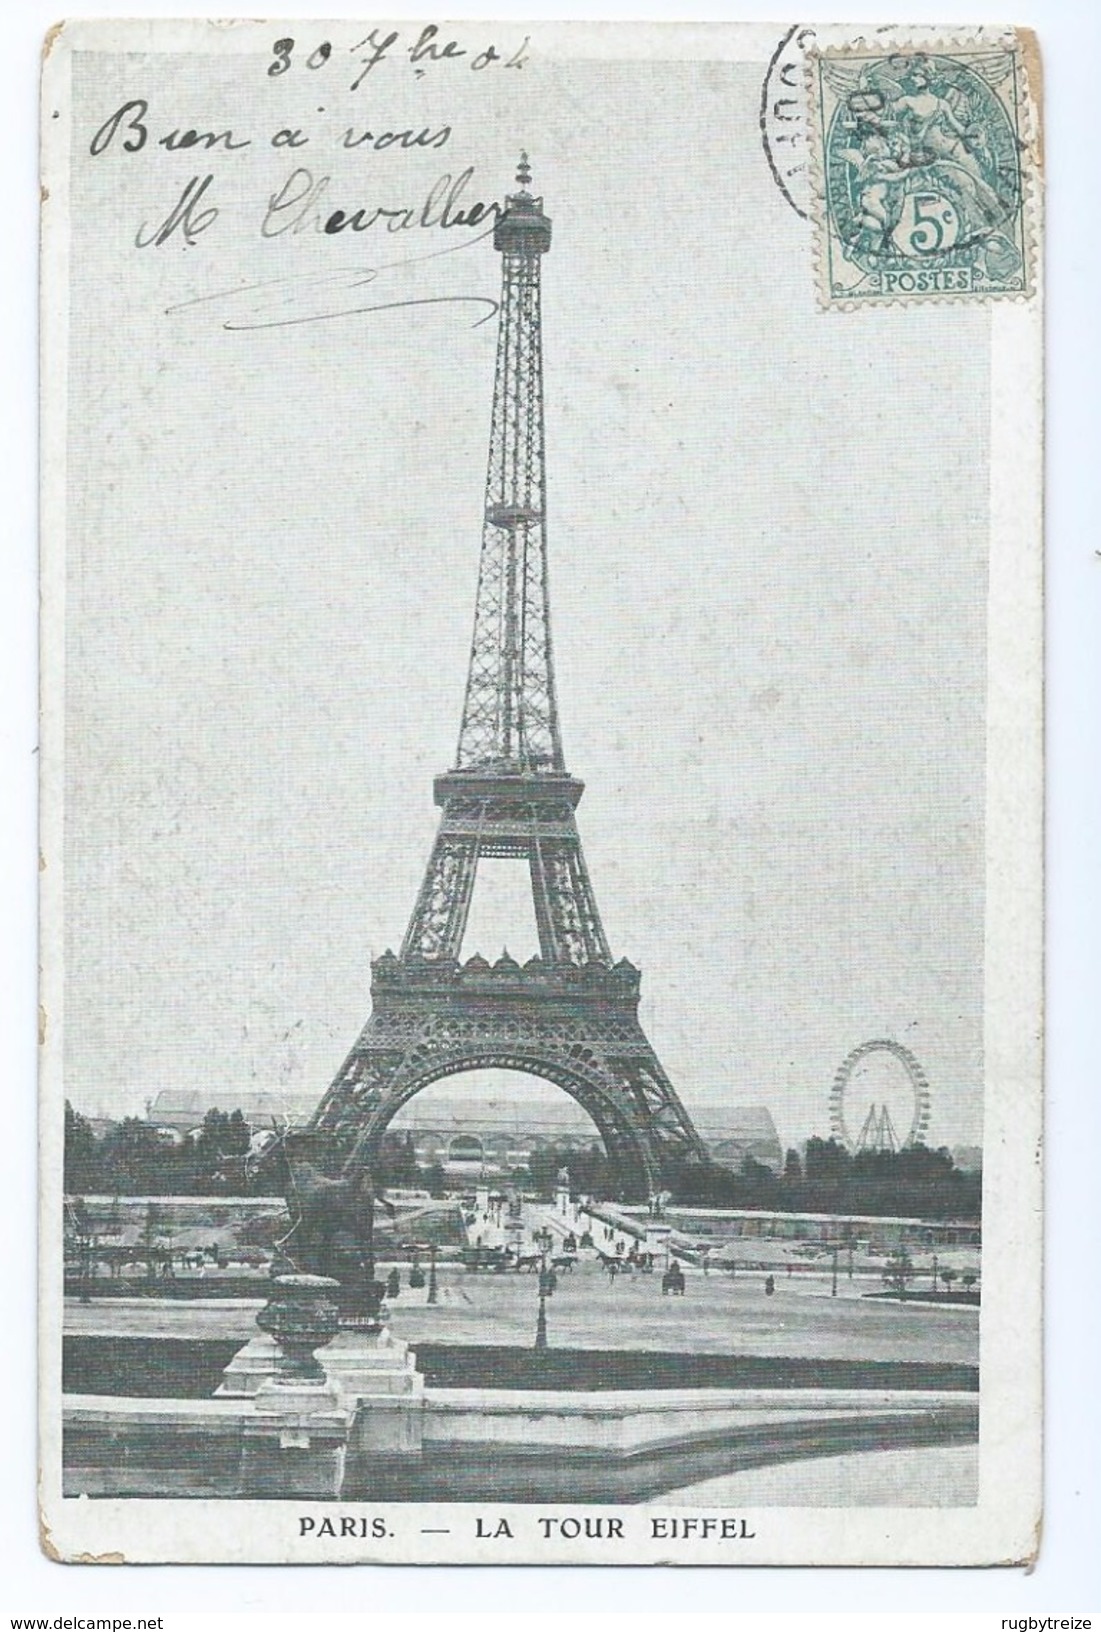 2272  Lot de 13 Cartes PARIS Trocadéro Louvre Tour Eiffel Statue Liberté Bartholdi Sacré Coeur Madeleine ideal revendeur